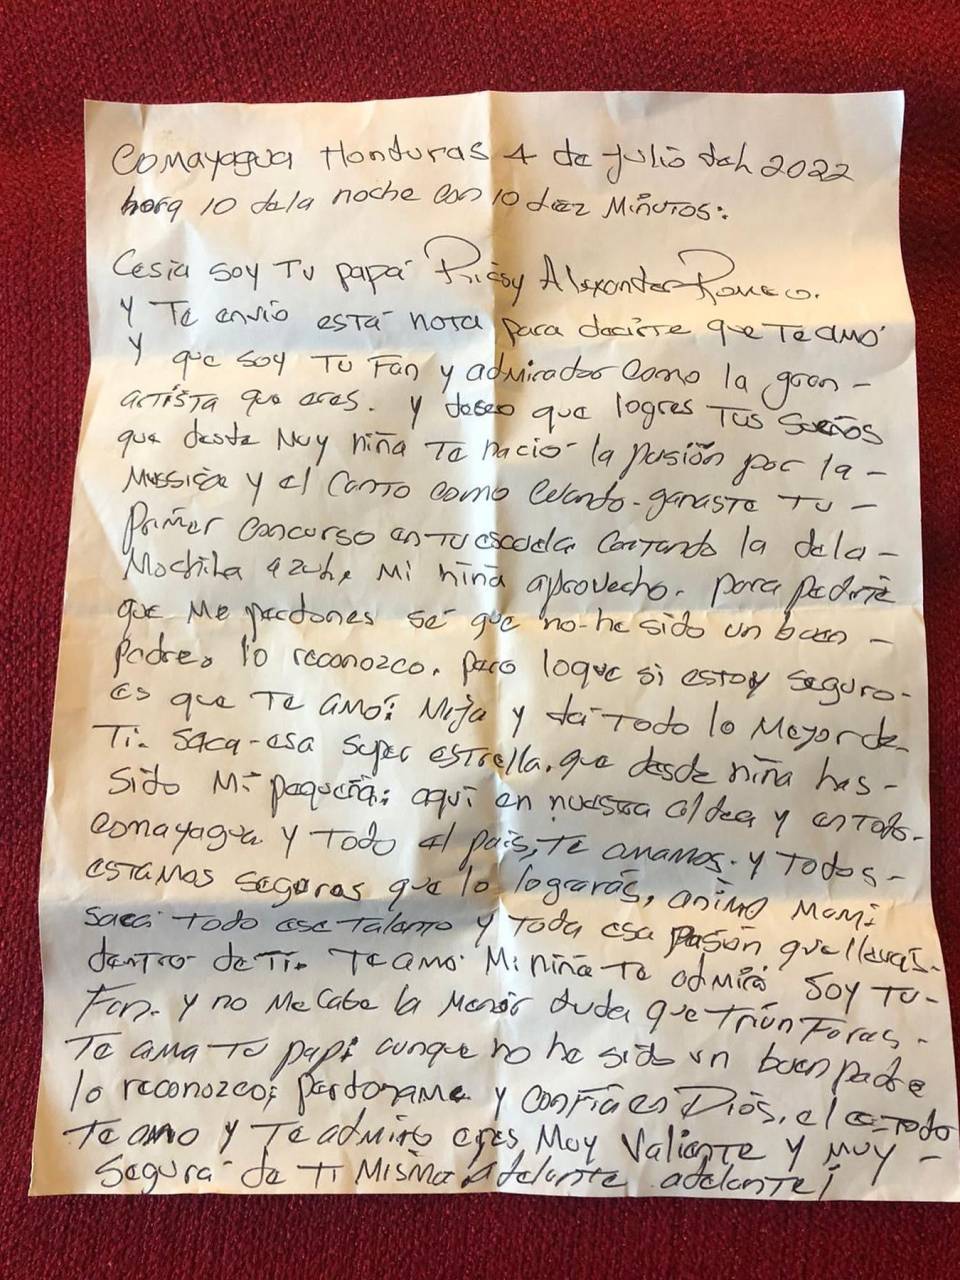 Esta es la carta escrita por el padre de la compatriota.